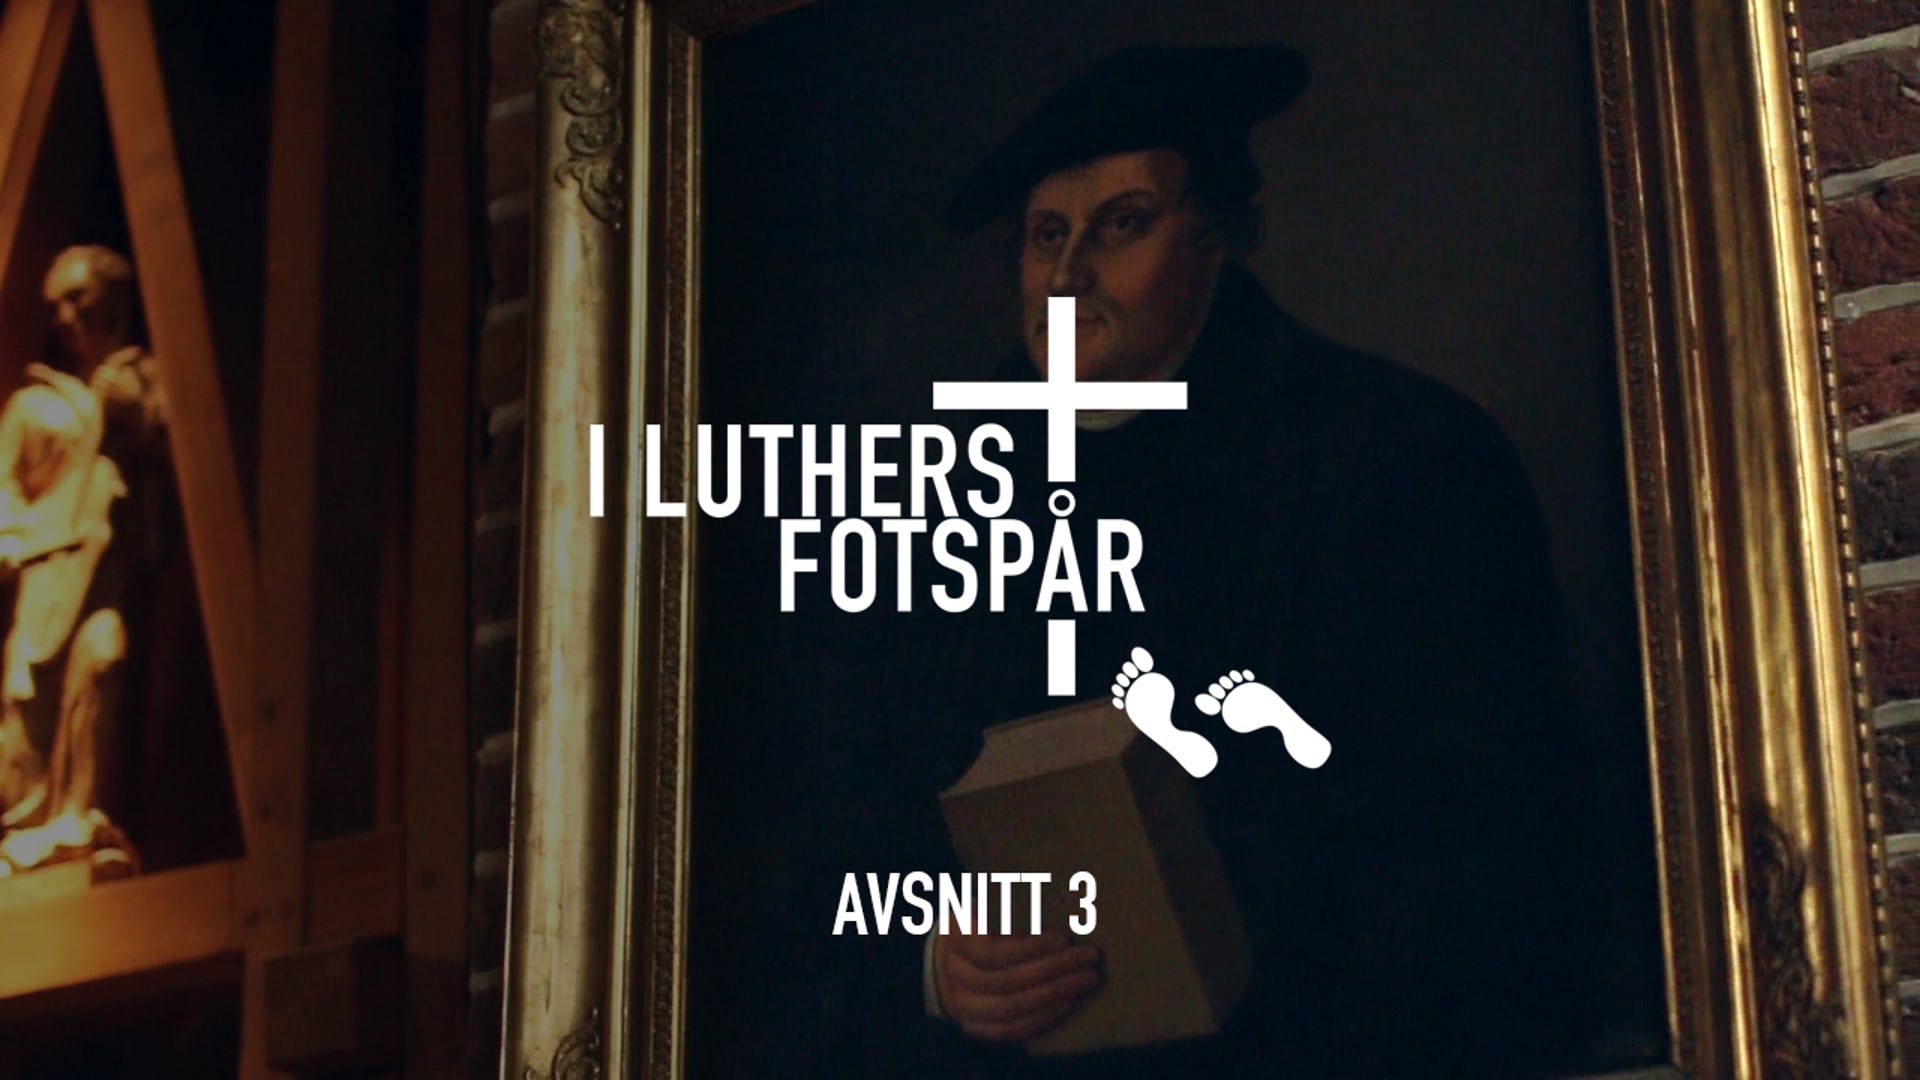 I Luthers fotspår – Avsnitt 3